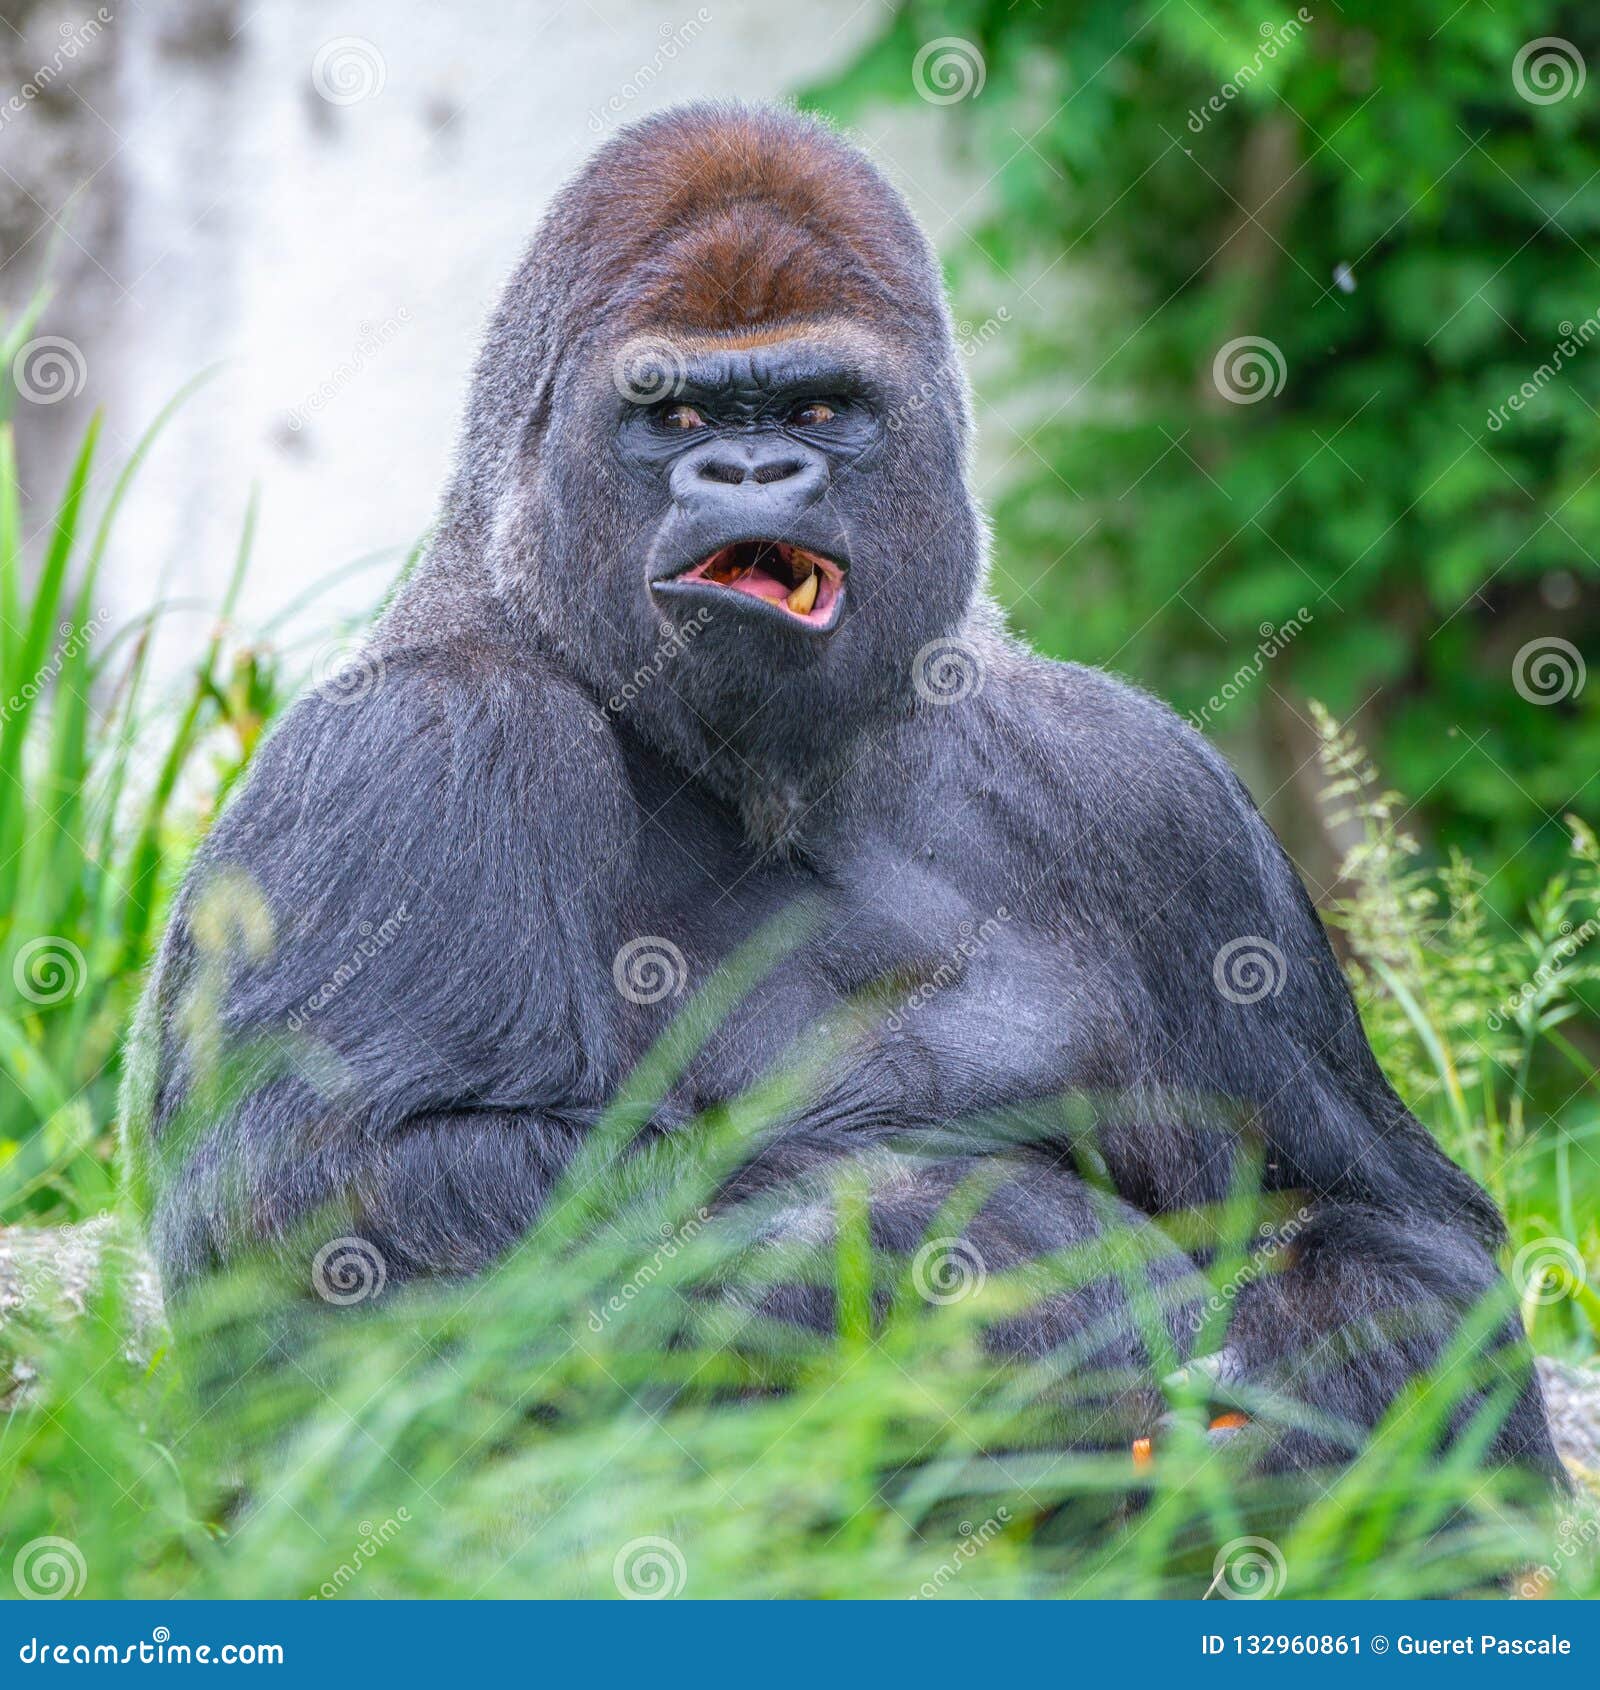  Gorilla monkey  stock image Image of dominant isolated 